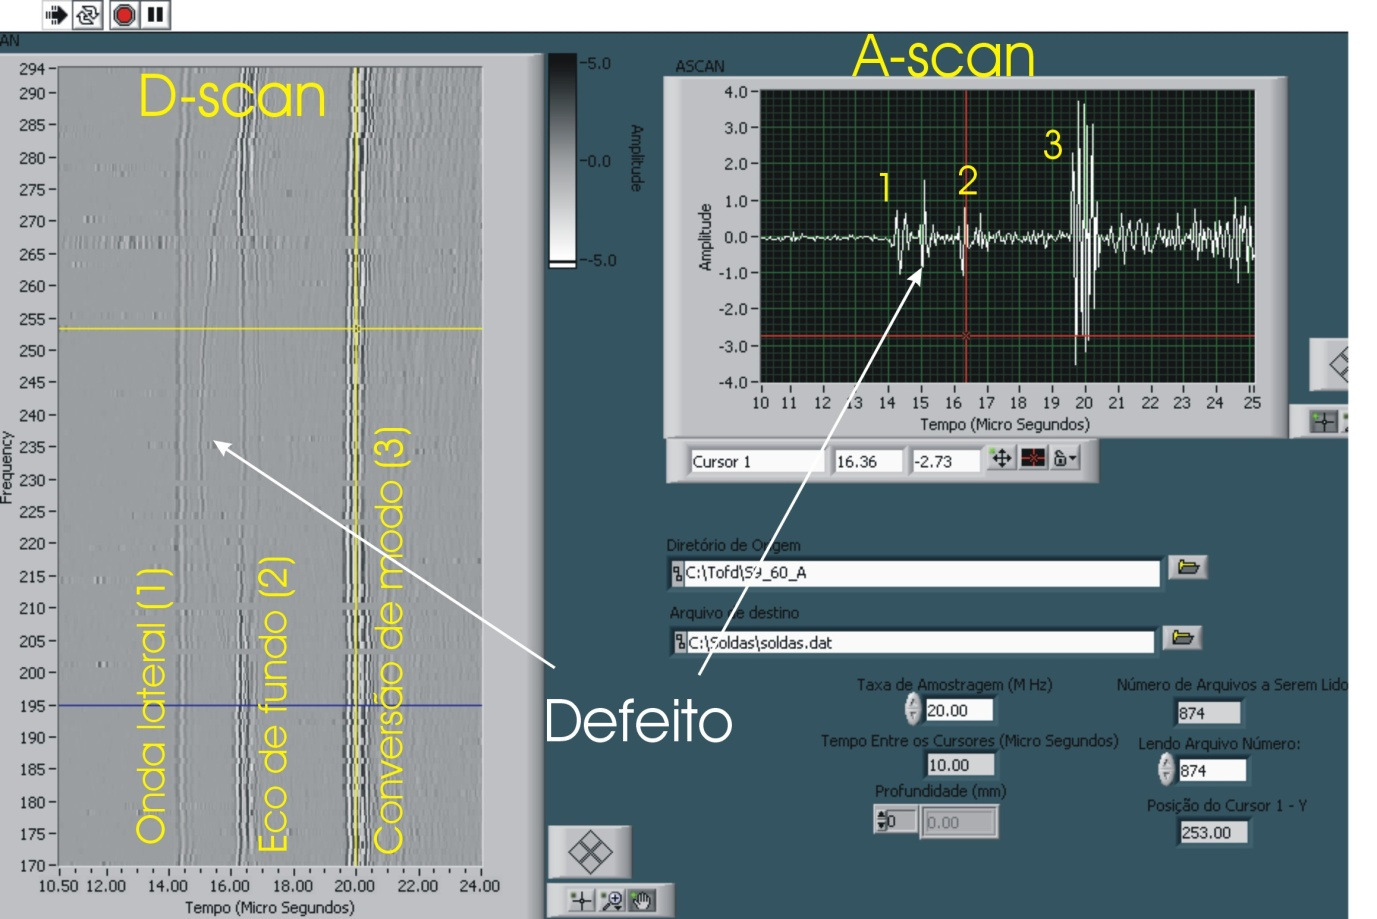 aquisição representada pela linha horizontal amarela sobre a imagem D-scan. A partir de uma calibração realizada no programa é possível determinar o dimensionamento de todos os defeitos detectados.